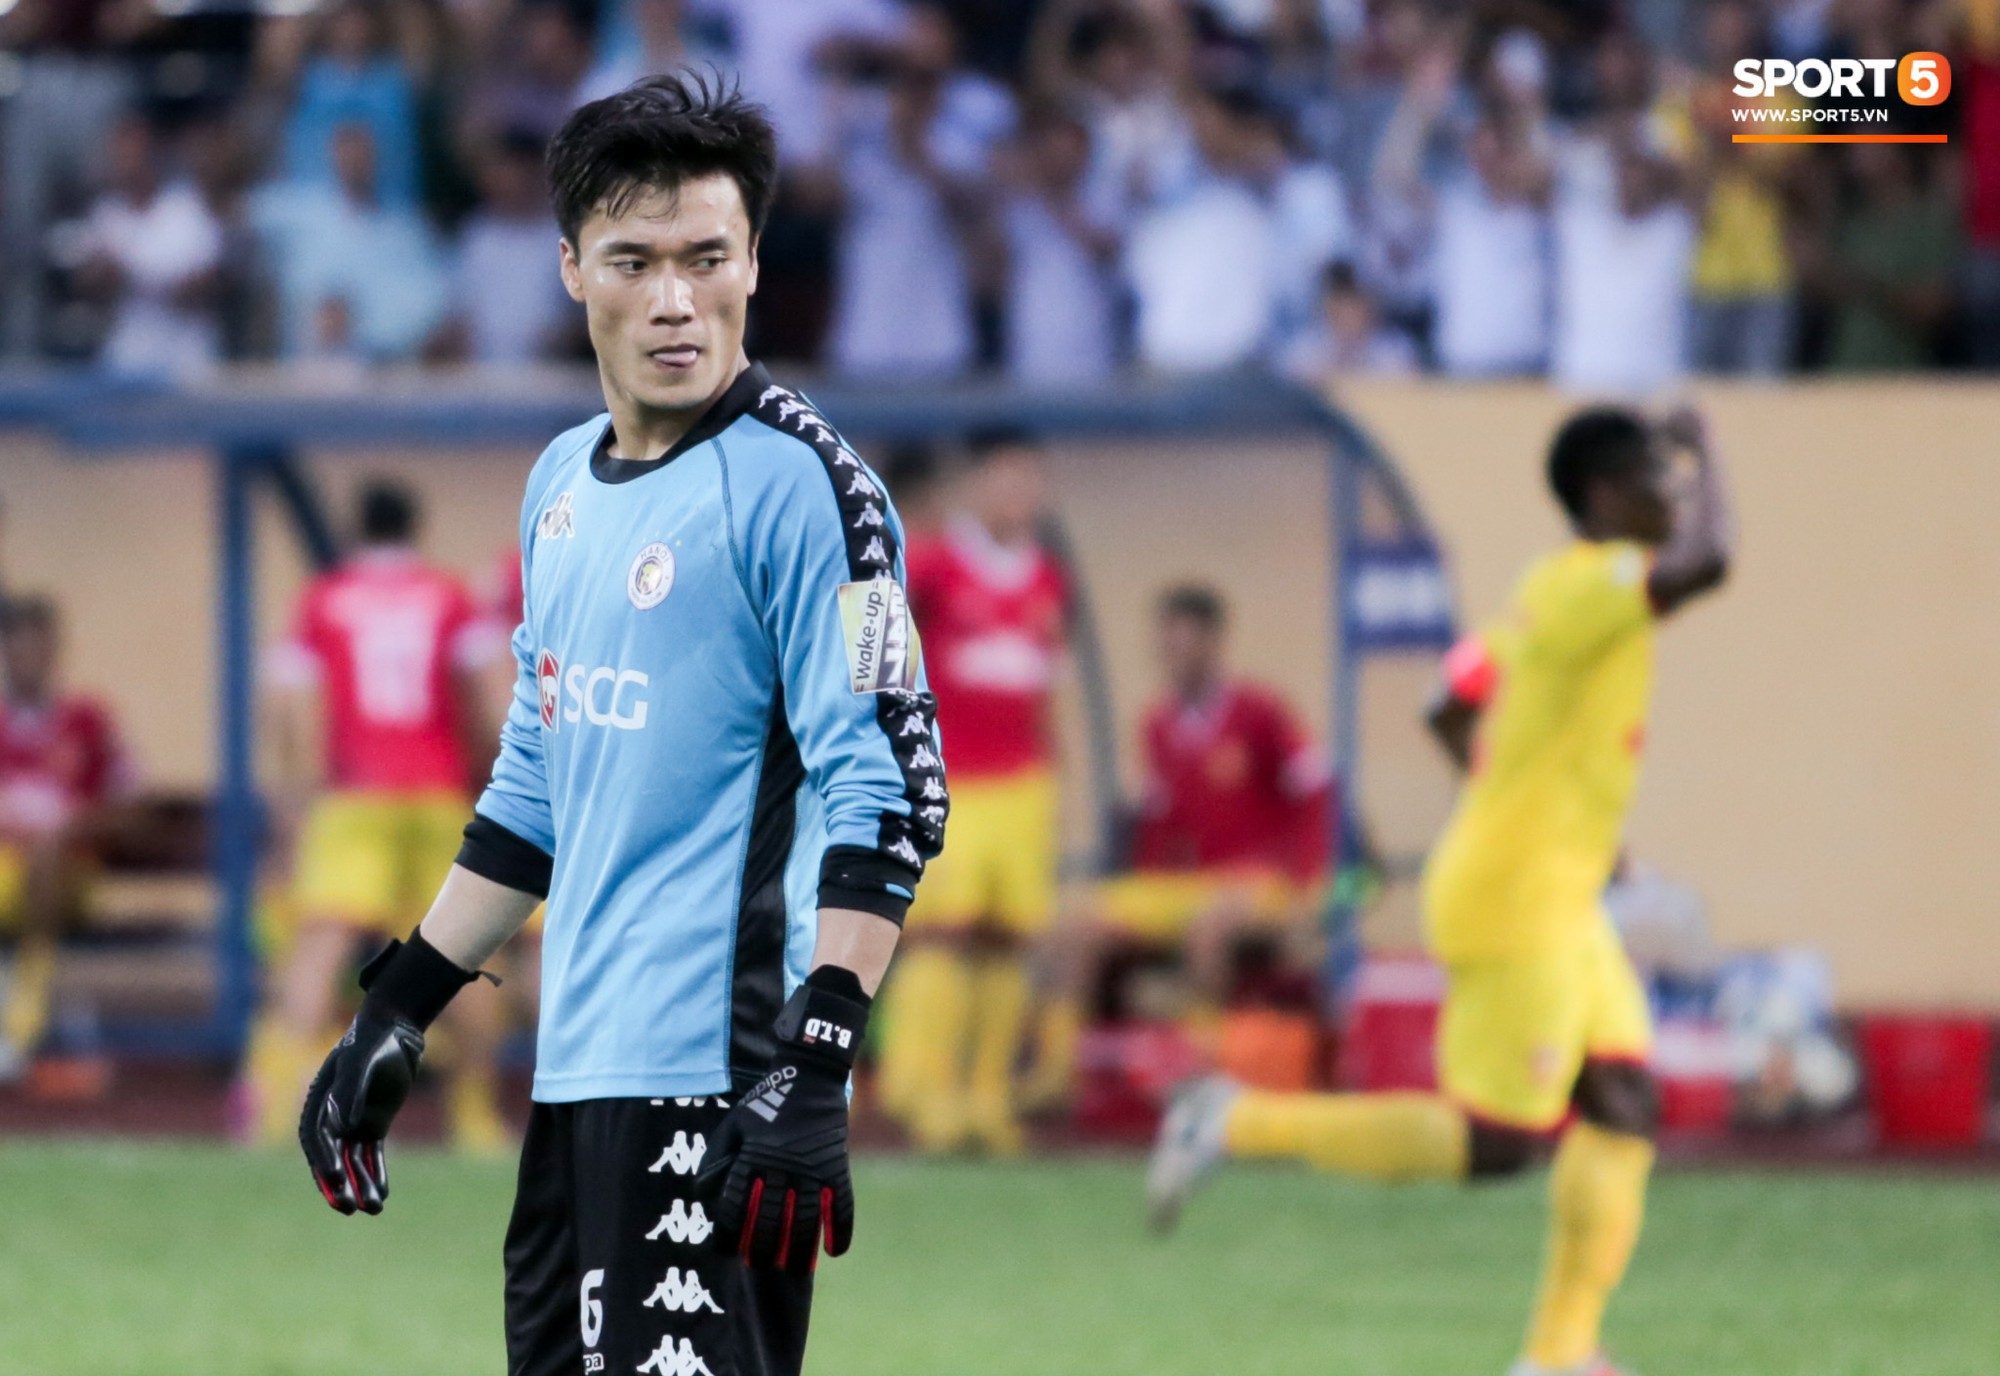 Thua thất vọng trước Nam Định, HLV Hà Nội FC vẫn bảo vệ Bùi Tiến Dũng hết lòng - Ảnh 1.